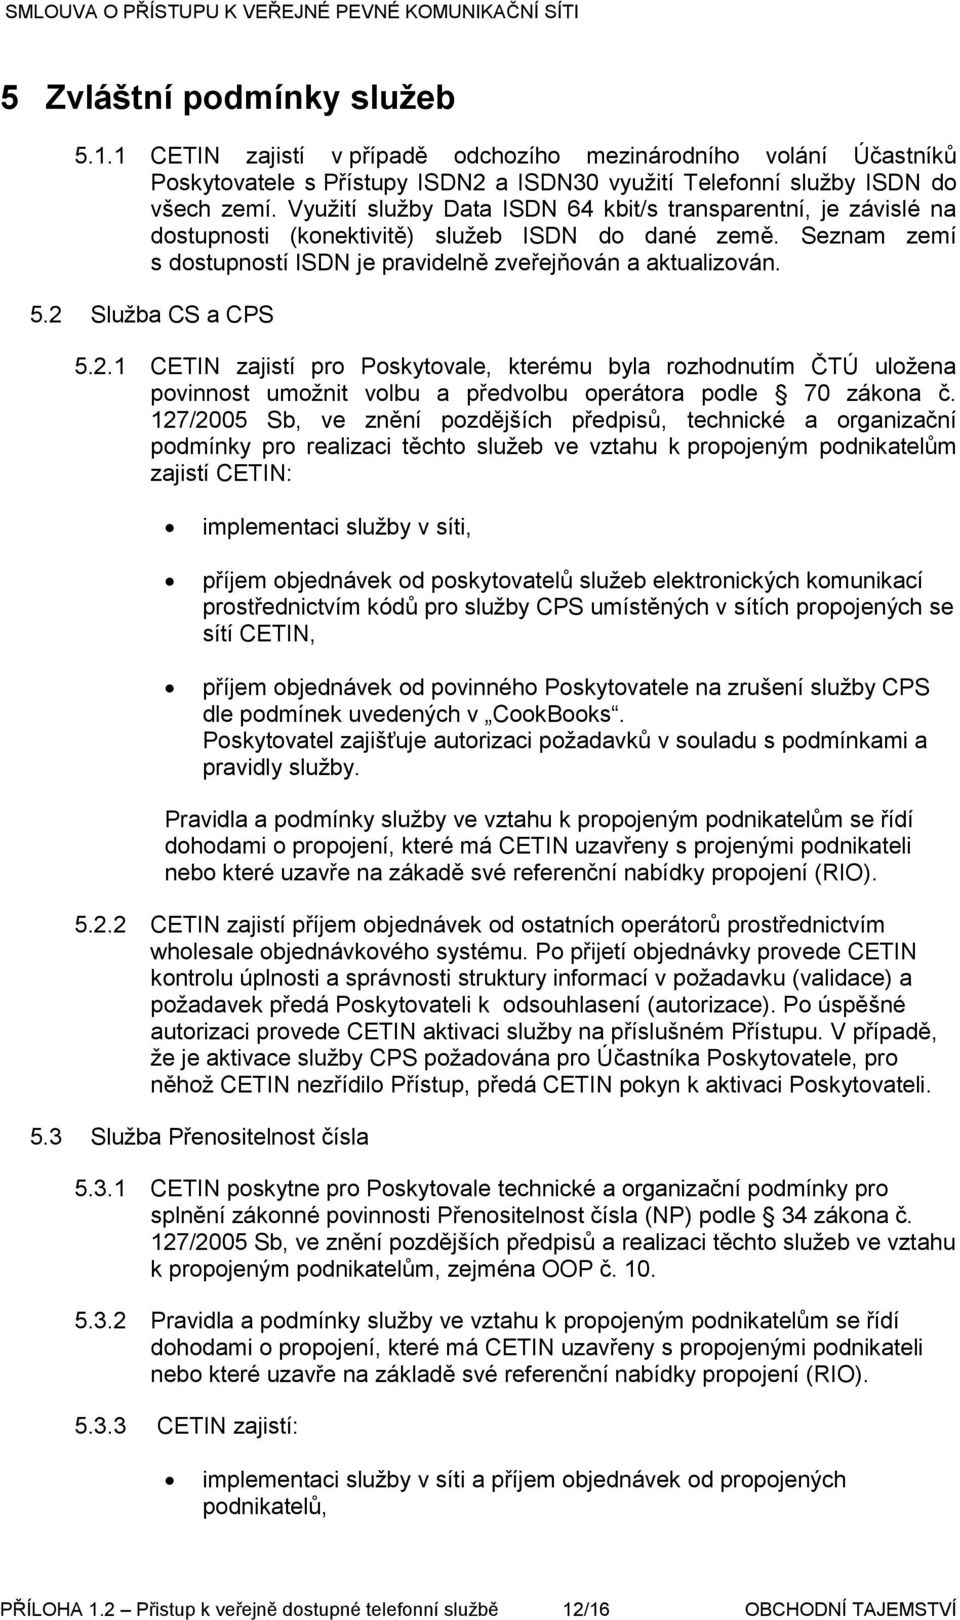 2 Služba CS a CPS 5.2.1 CETIN zajistí pro Poskytovale, kterému byla rozhodnutím ČTÚ uložena povinnost umožnit volbu a předvolbu operátora podle 70 zákona č.